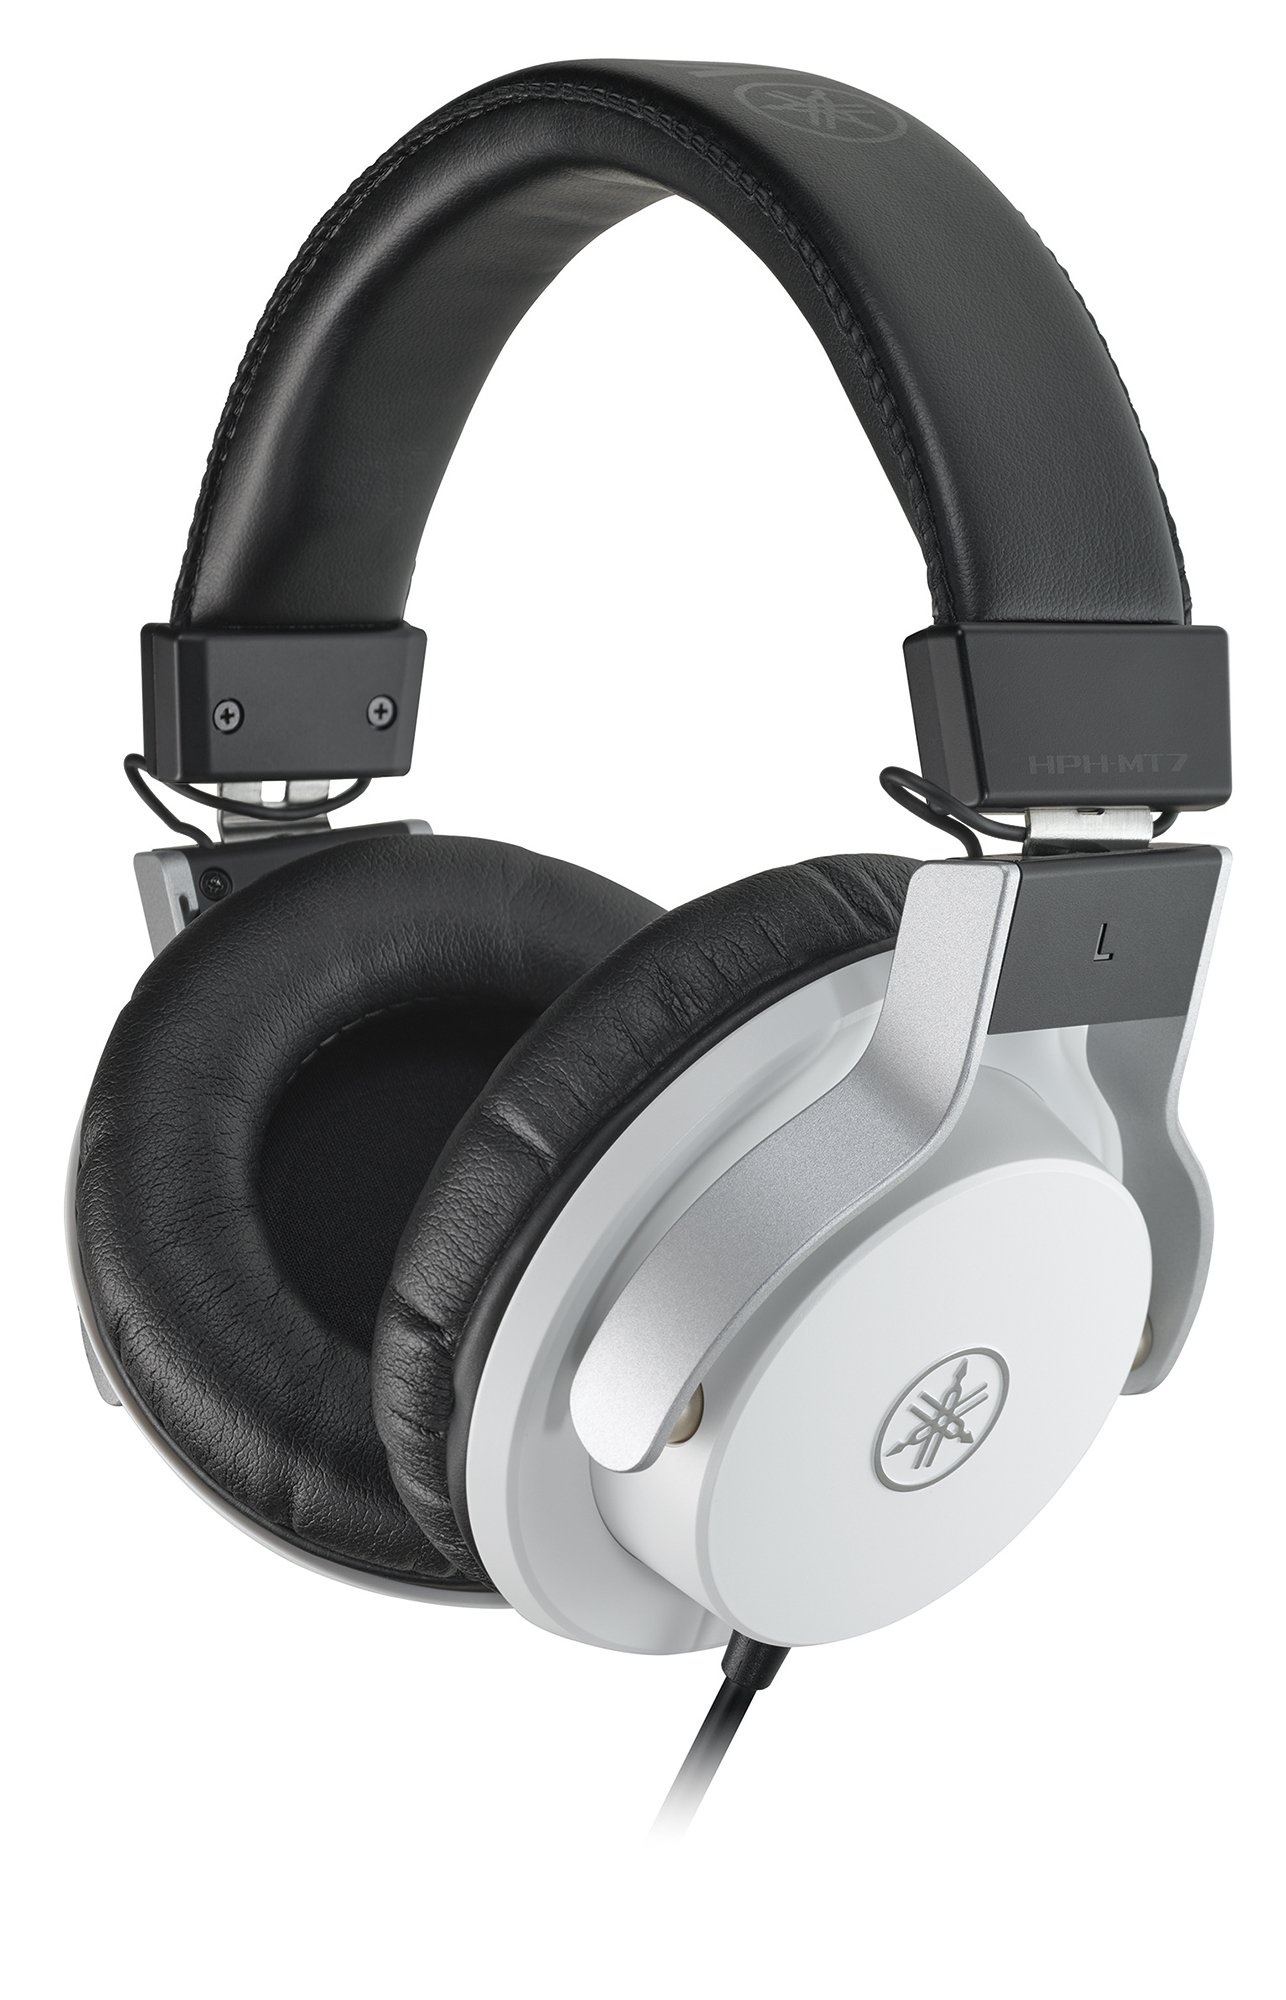 Yamaha HPH-MT7 Studio-Kopfhörer – Faltbare High End Kopfhörer mit 3 m Kabel und 6,3 mm Standard-Stereo-Adapterstecker – Weiß